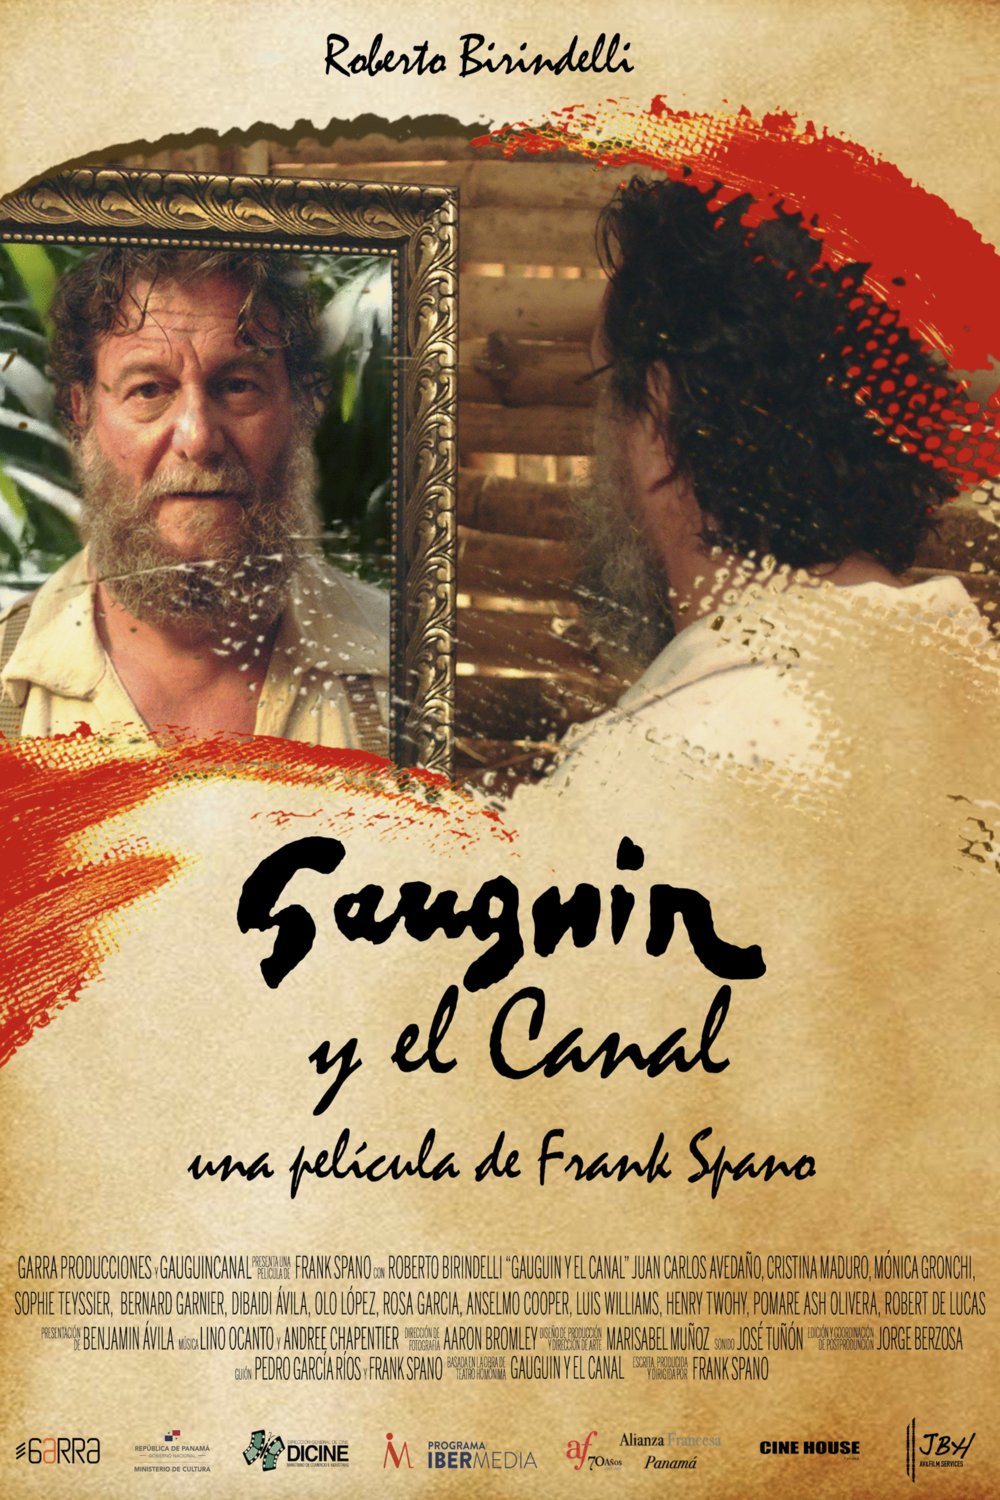 Poster of the movie Gauguin y el Canal